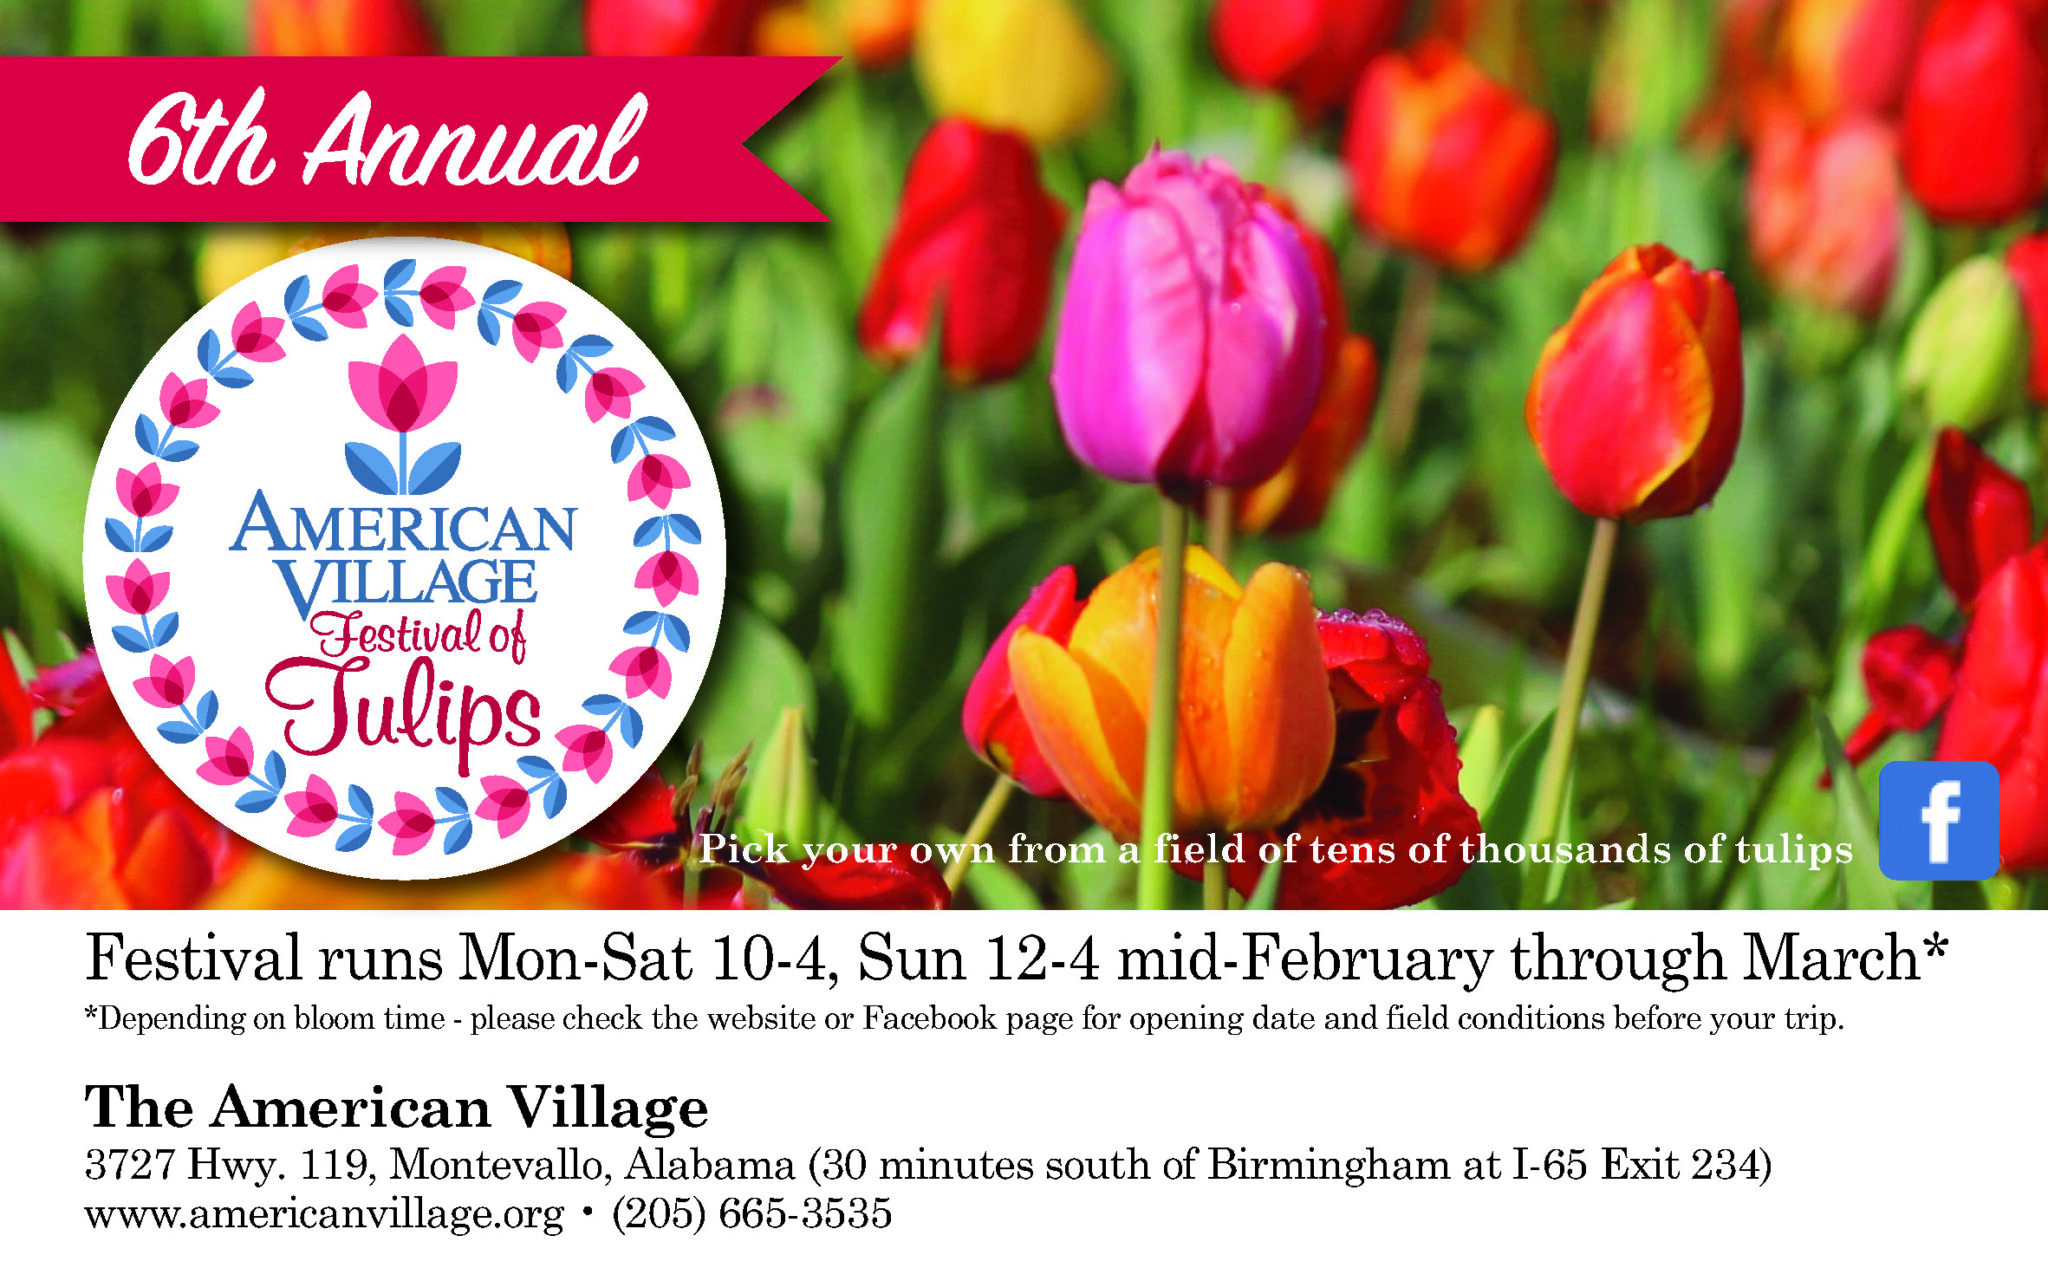 6th Annual American Village Festival of Tulips, Montevallo, Ala